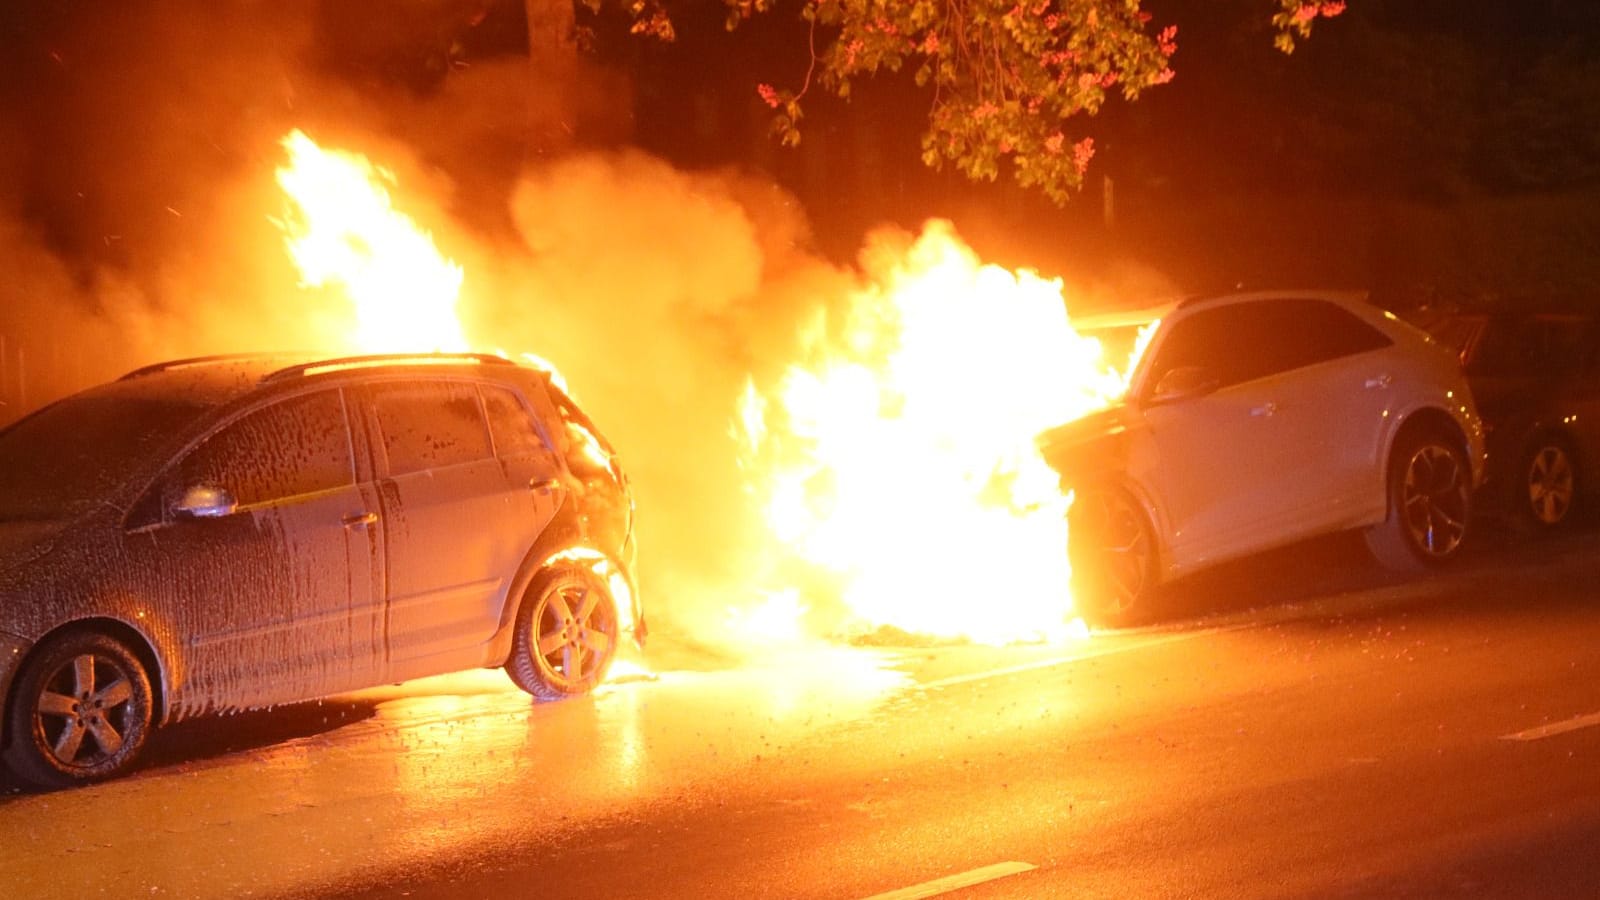 Liveblog | 1. Mai in Berlin: Mehrere Autos in Flammen – Polizei äußert sich